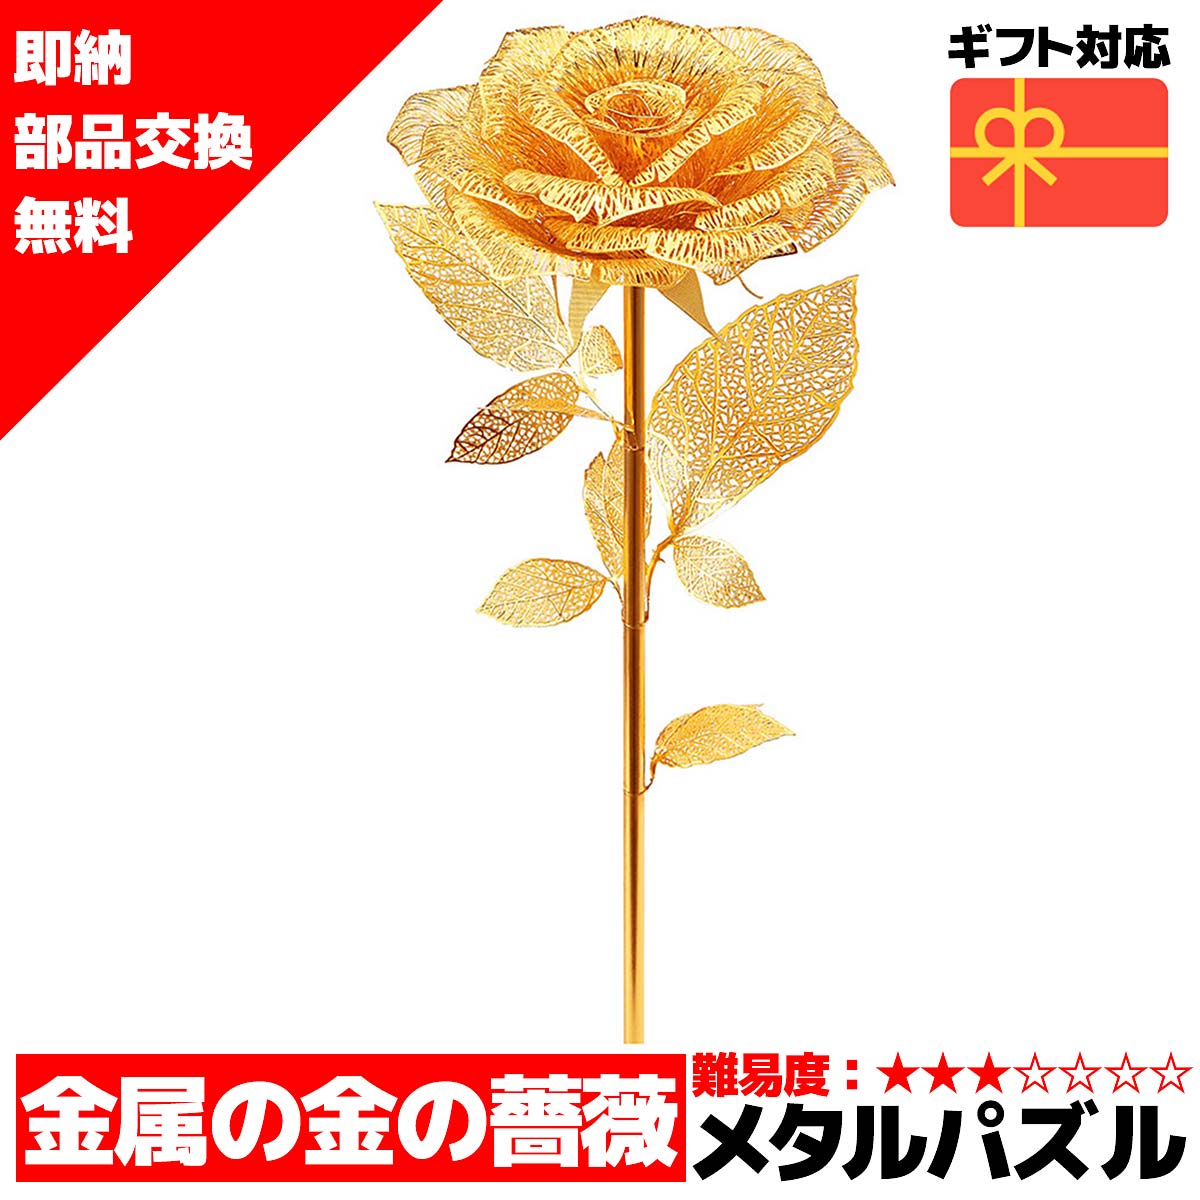 【楽天市場】スーパーセール 半額 メタルパズル 黄金の薔薇 